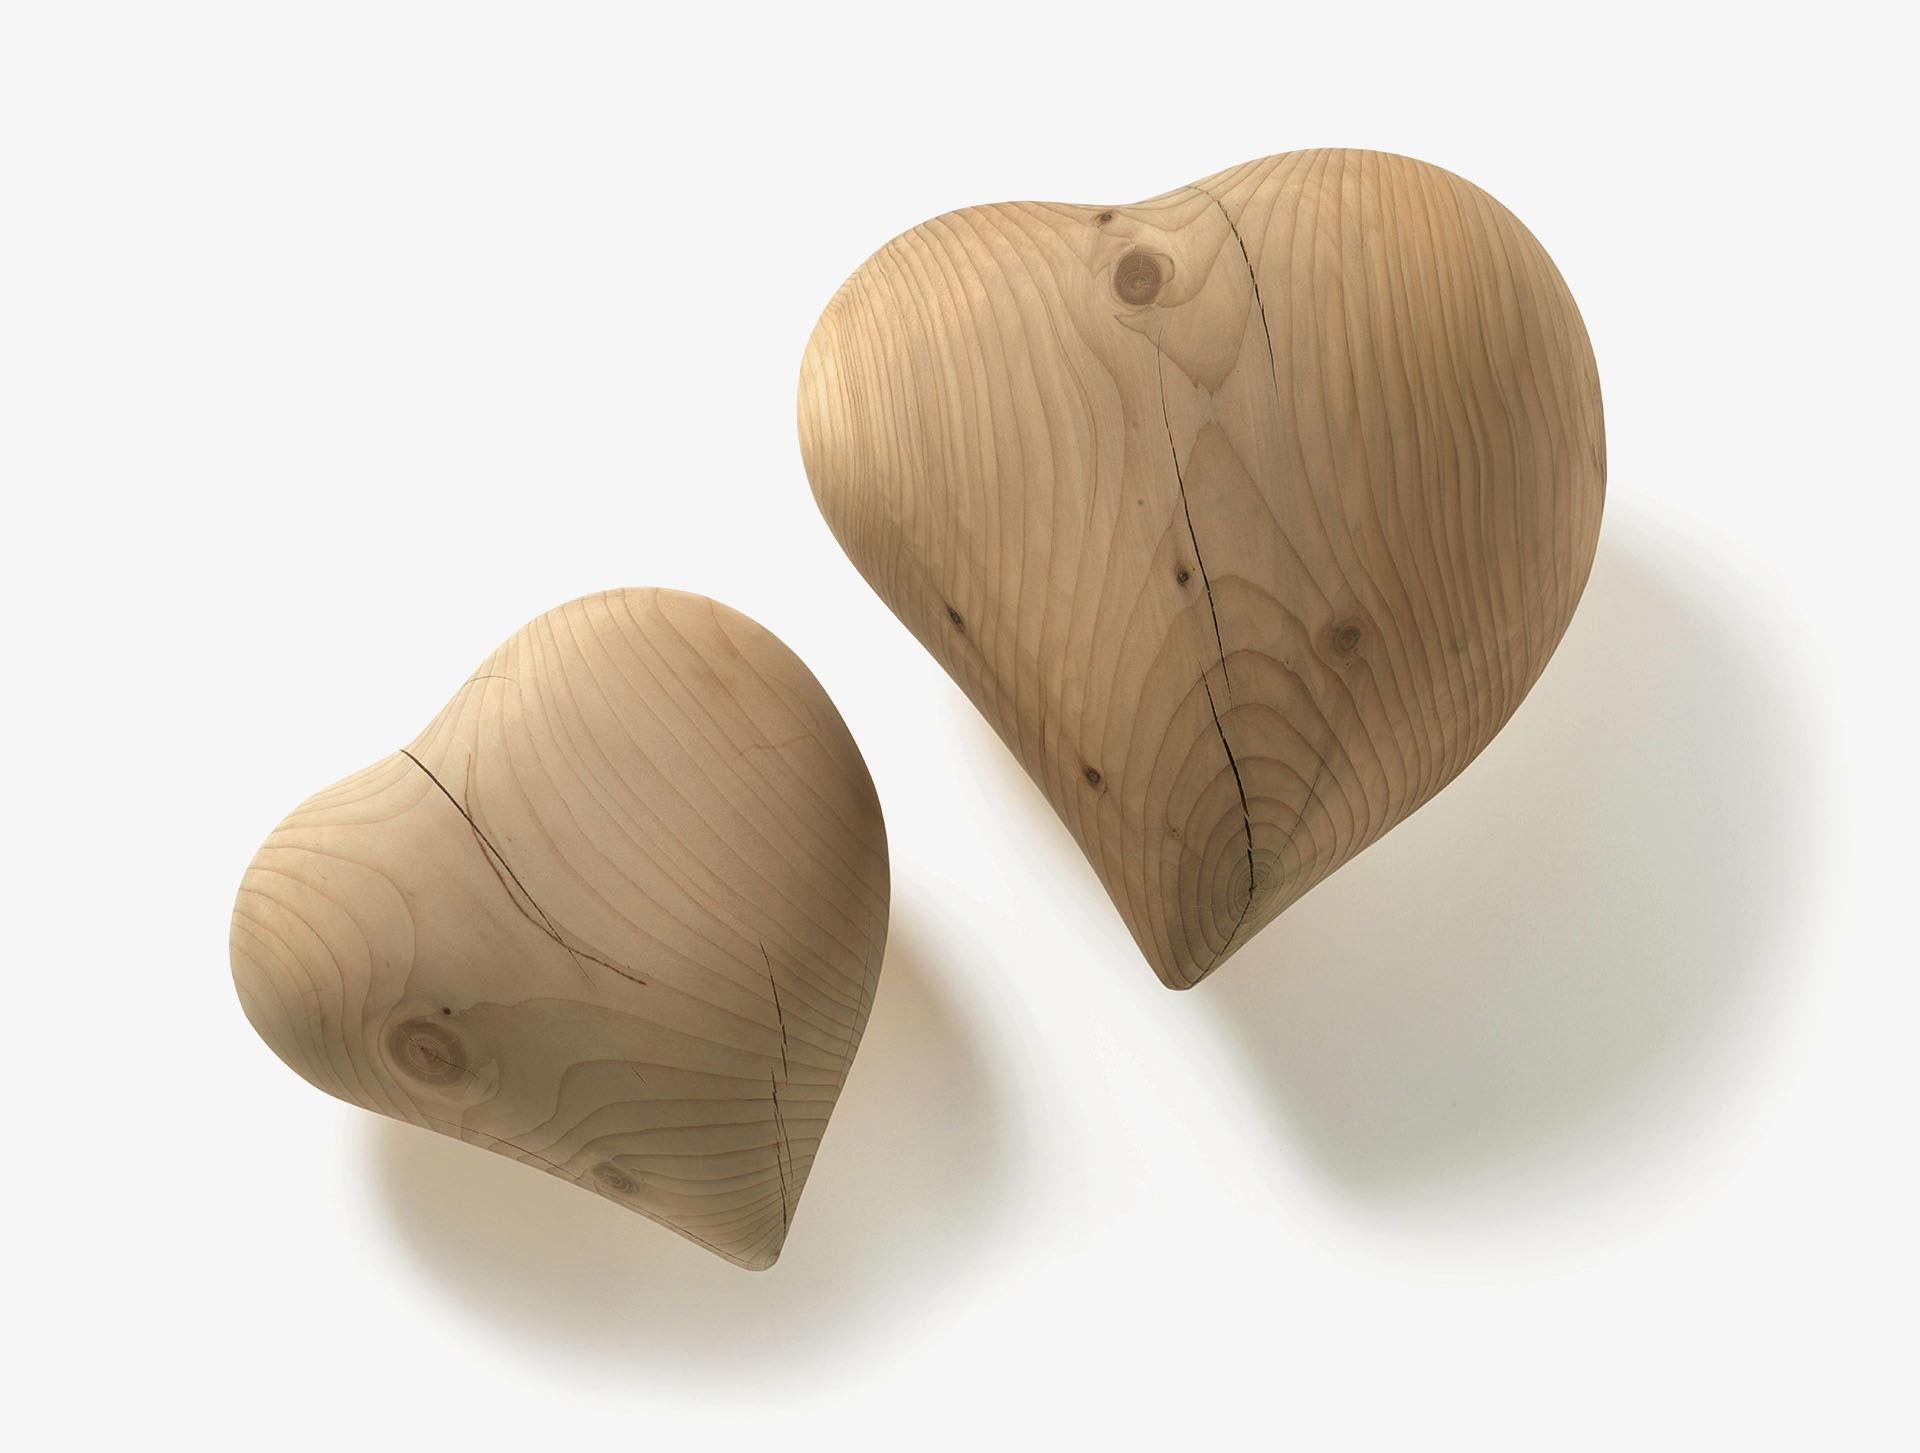 Presse-papiers Cuore Heart Cedar Wood Small
Dimensions : 11 x 11 x 5cm
En stock à Los Angeles

Riva 1920 a produit le symbole de l'amour en bois de cèdre parfumé. Pour être utilisé comme presse-papiers ou simplement comme objet de design, il est